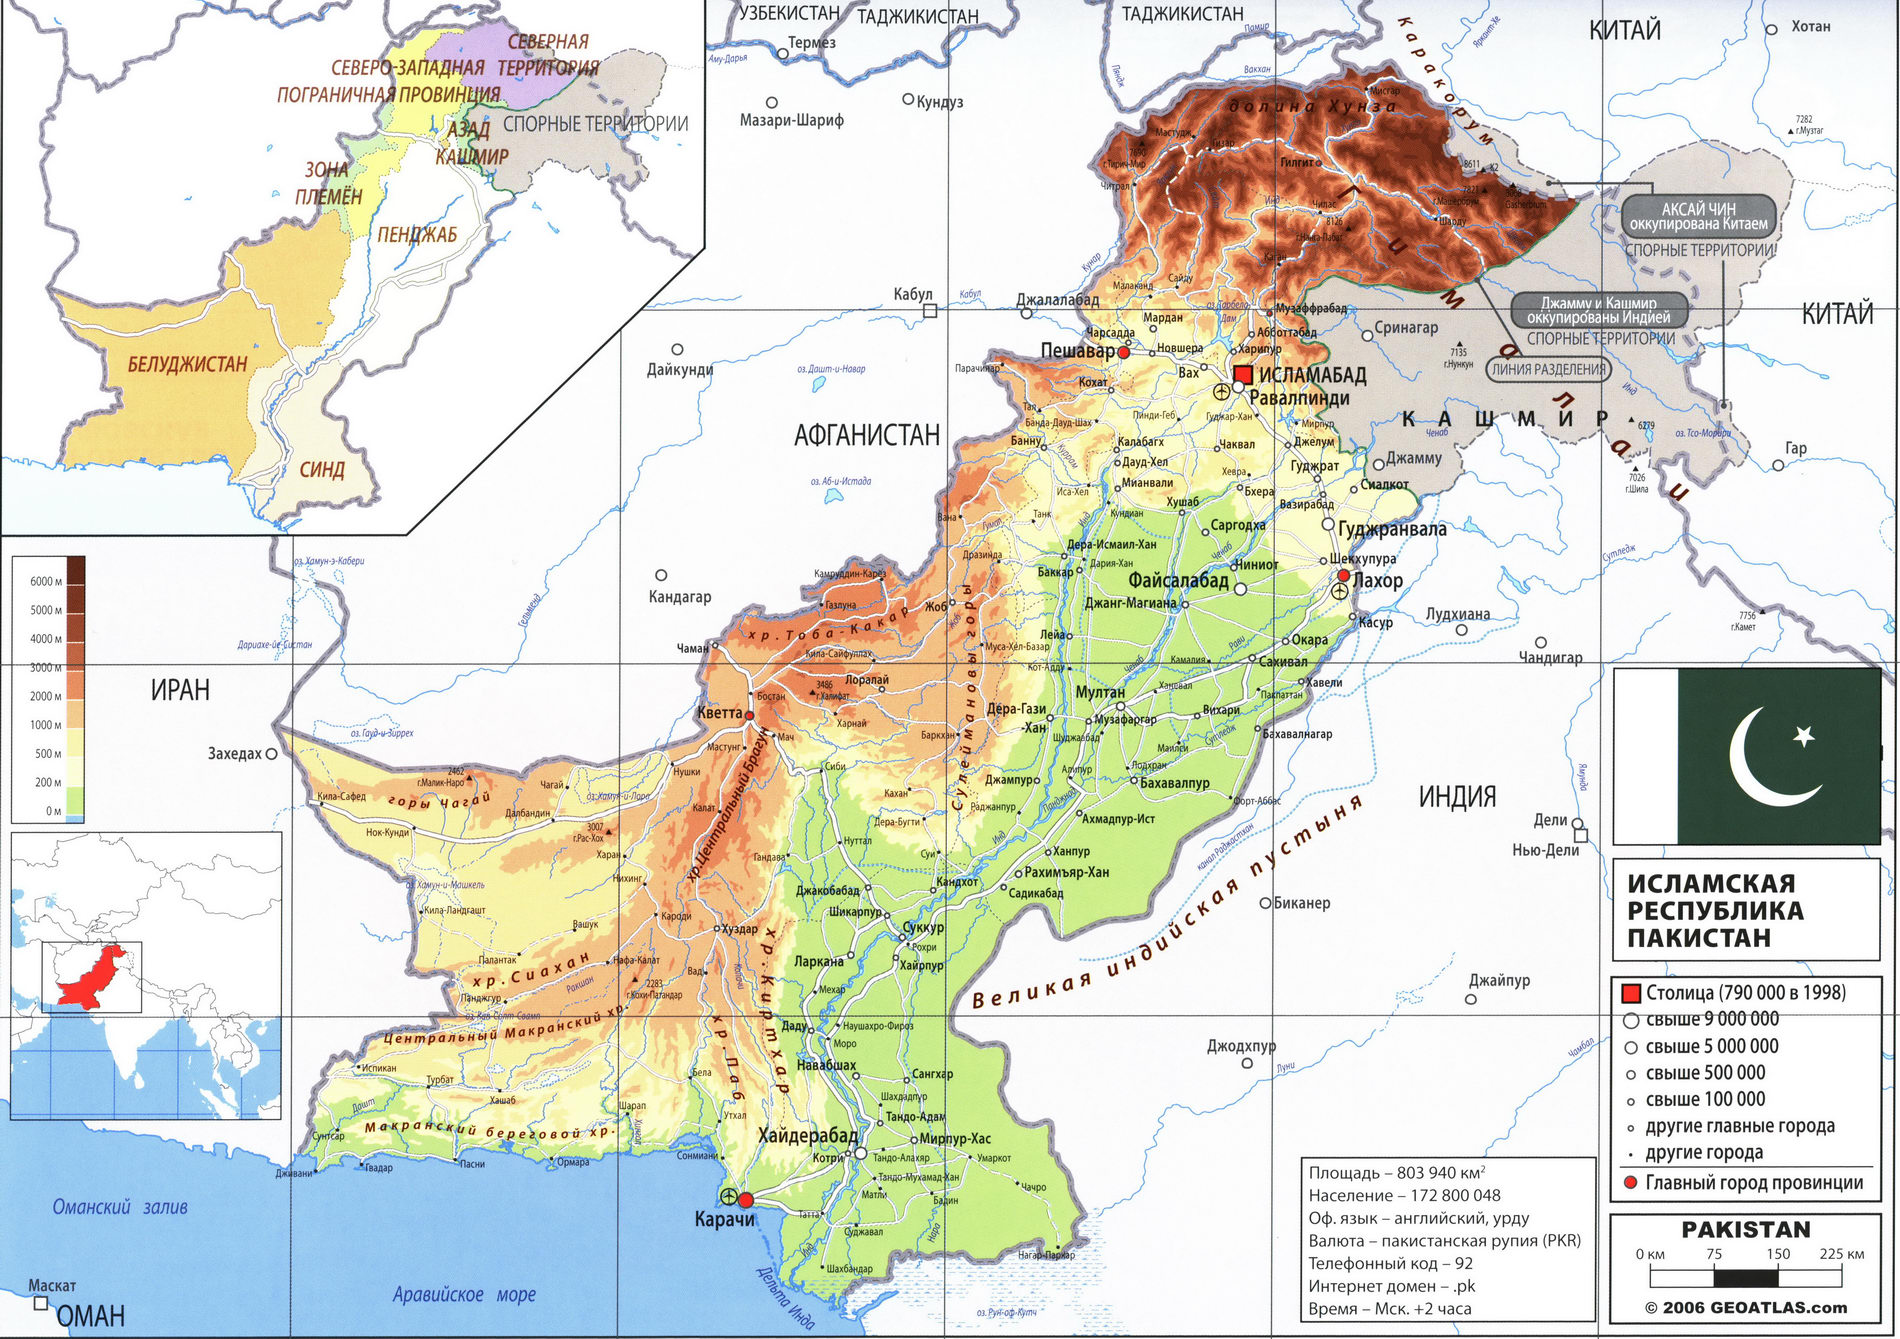 Пакистан карта на русском языке